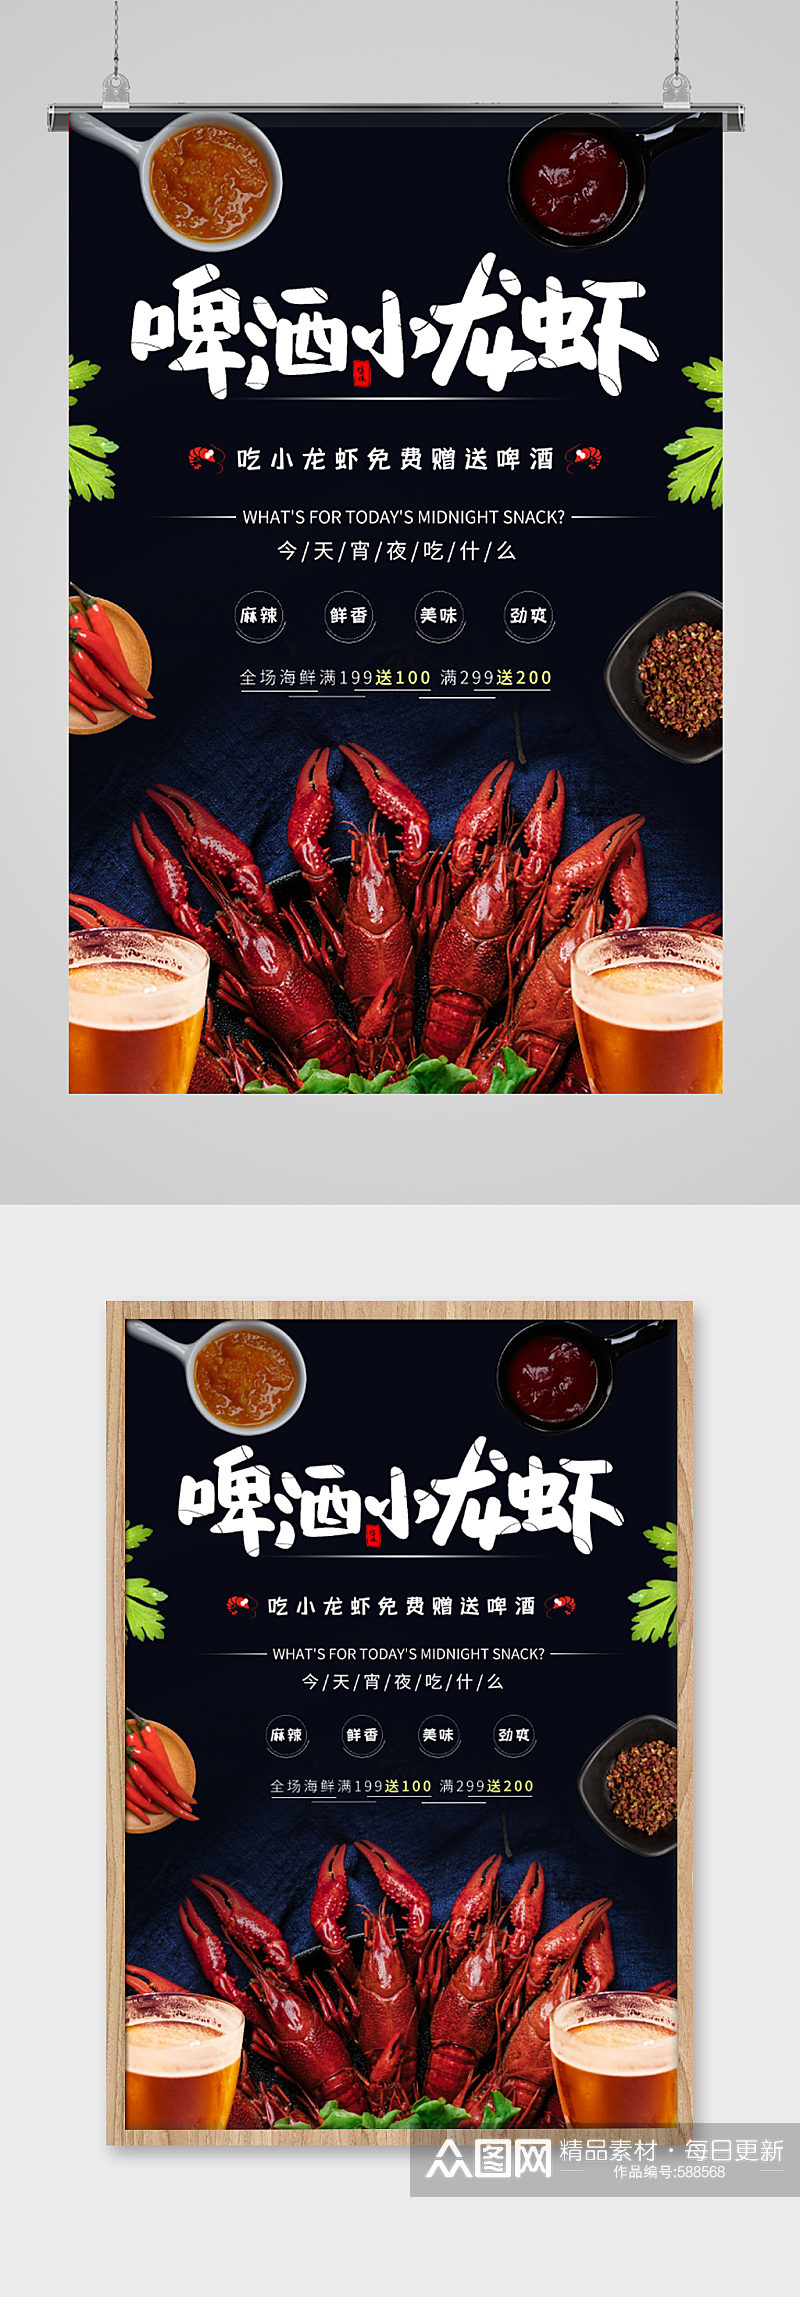 啤酒小龙虾海鲜美食海报素材